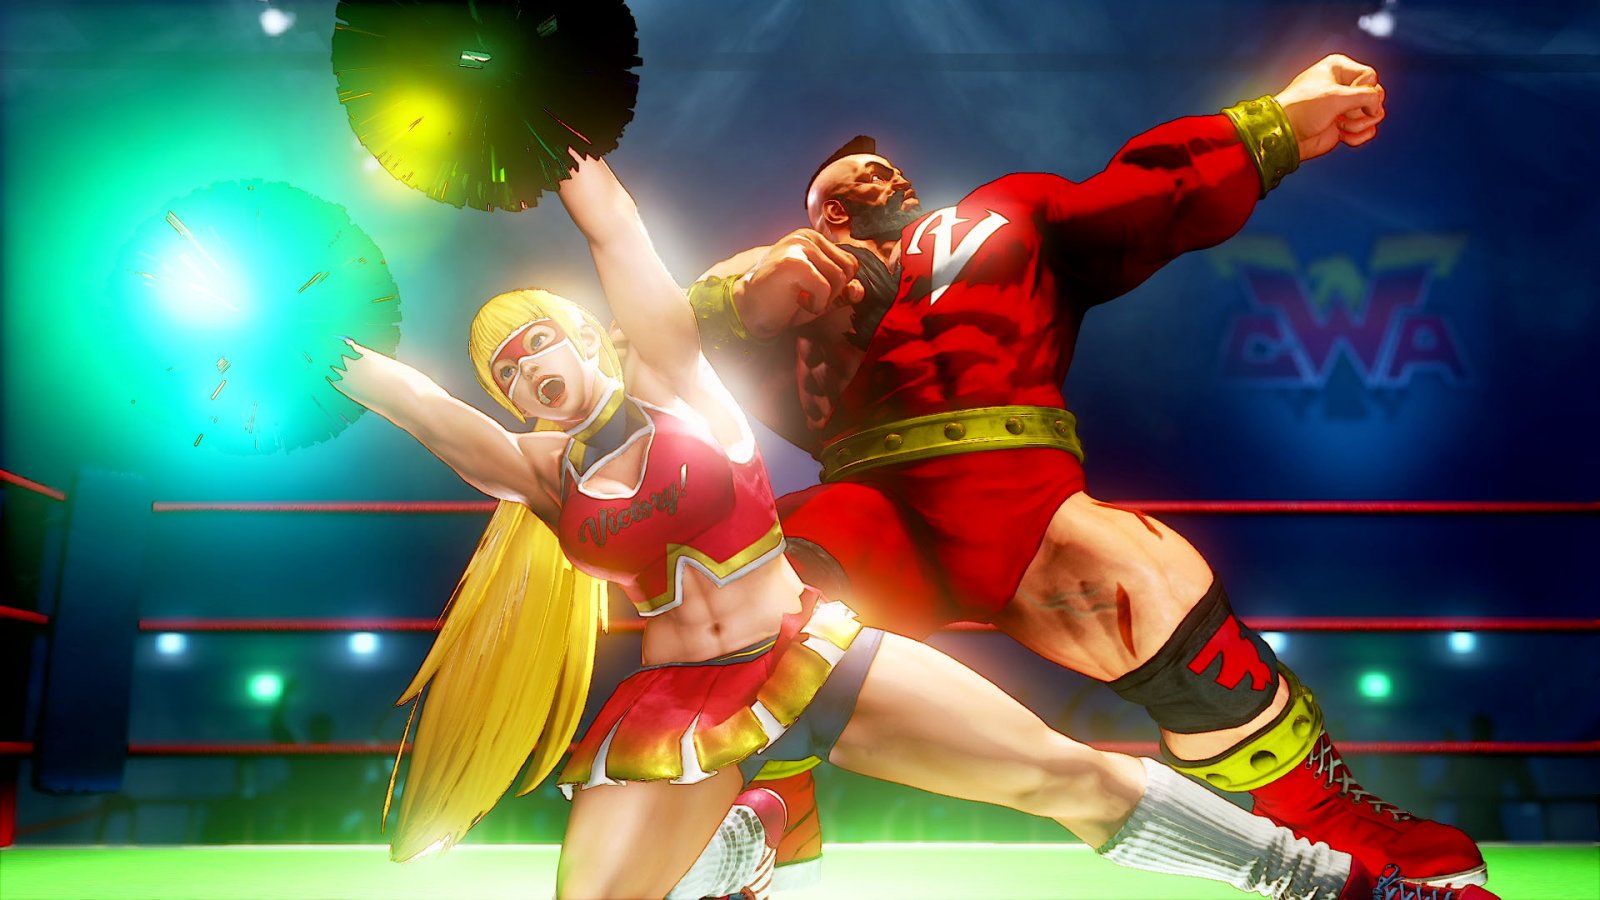 Street Fighter 5: i DLC avrebbero salvato il gioco e la serie dalle pessime vendite iniziali